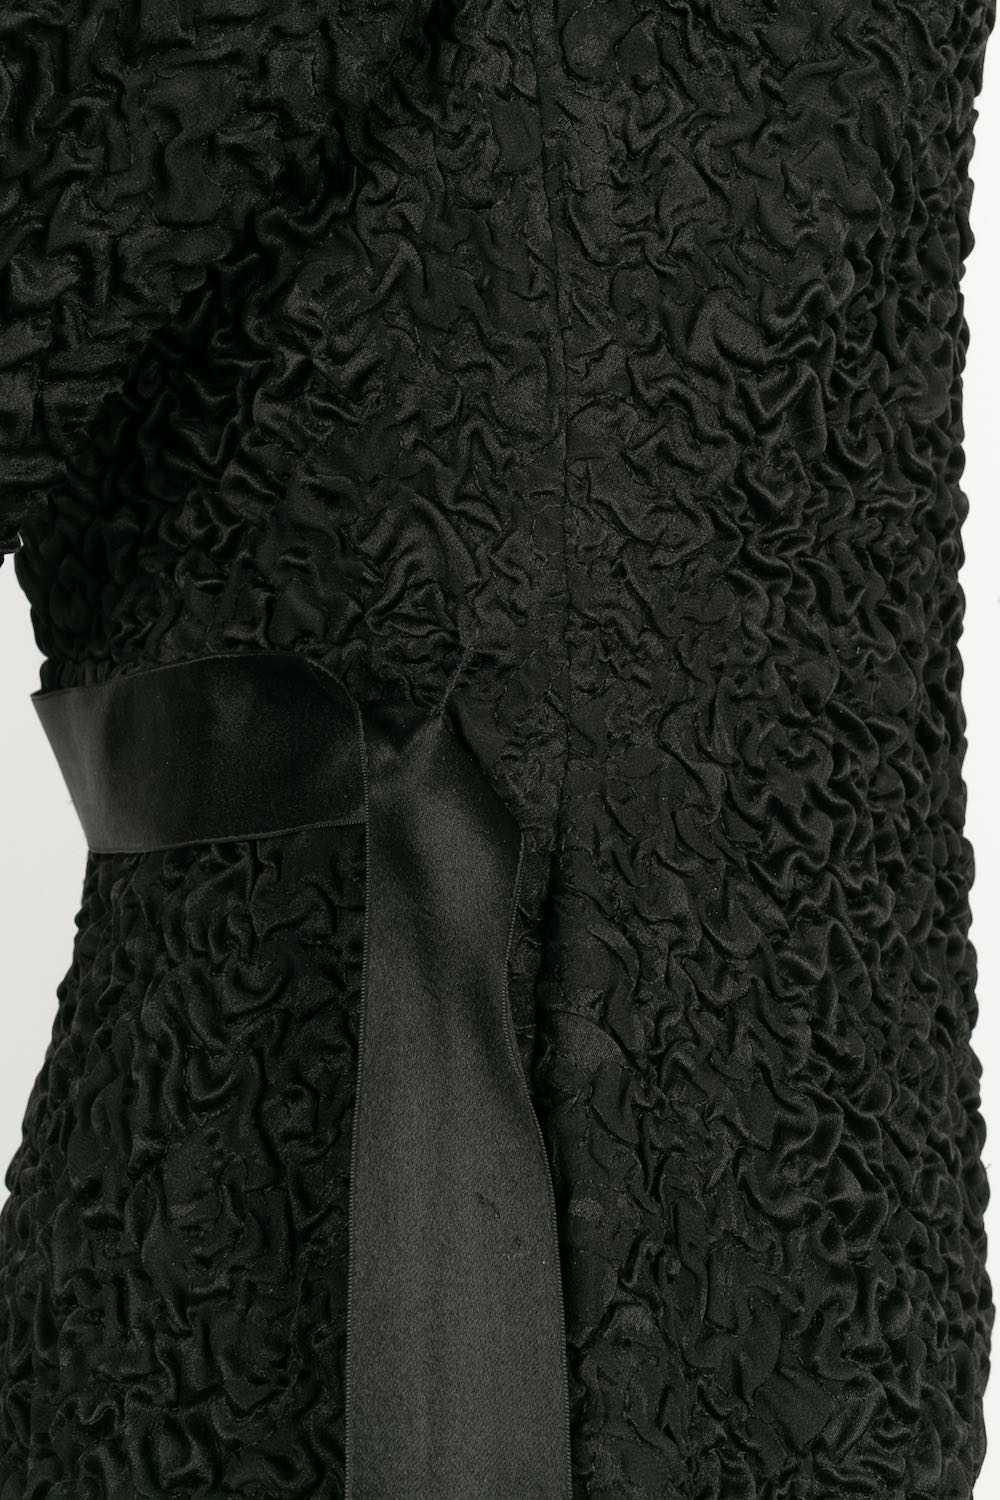 Yves Saint Laurent Haute Couture set - image 8